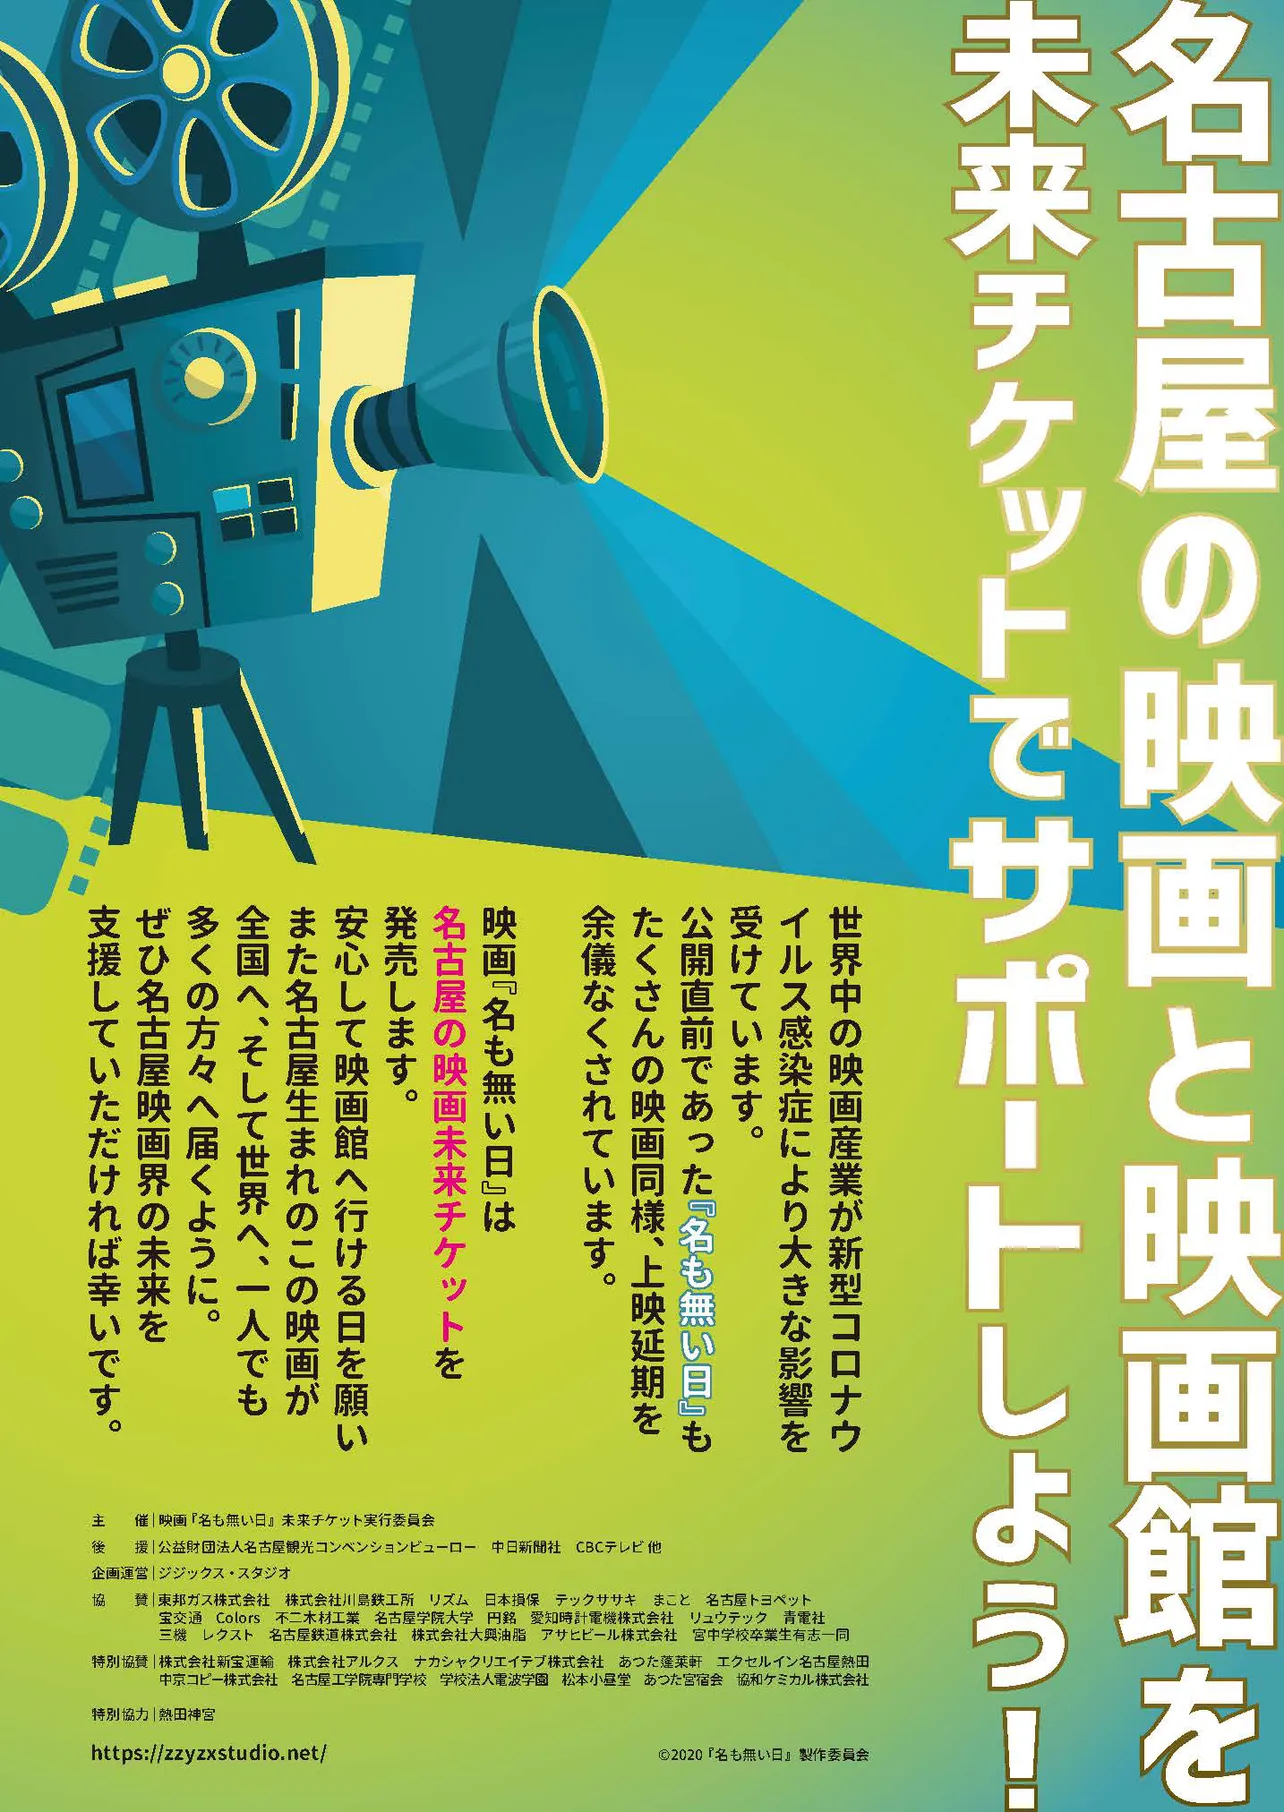 「名古屋の映画未来チケット」で映画産業をサポートしよう！